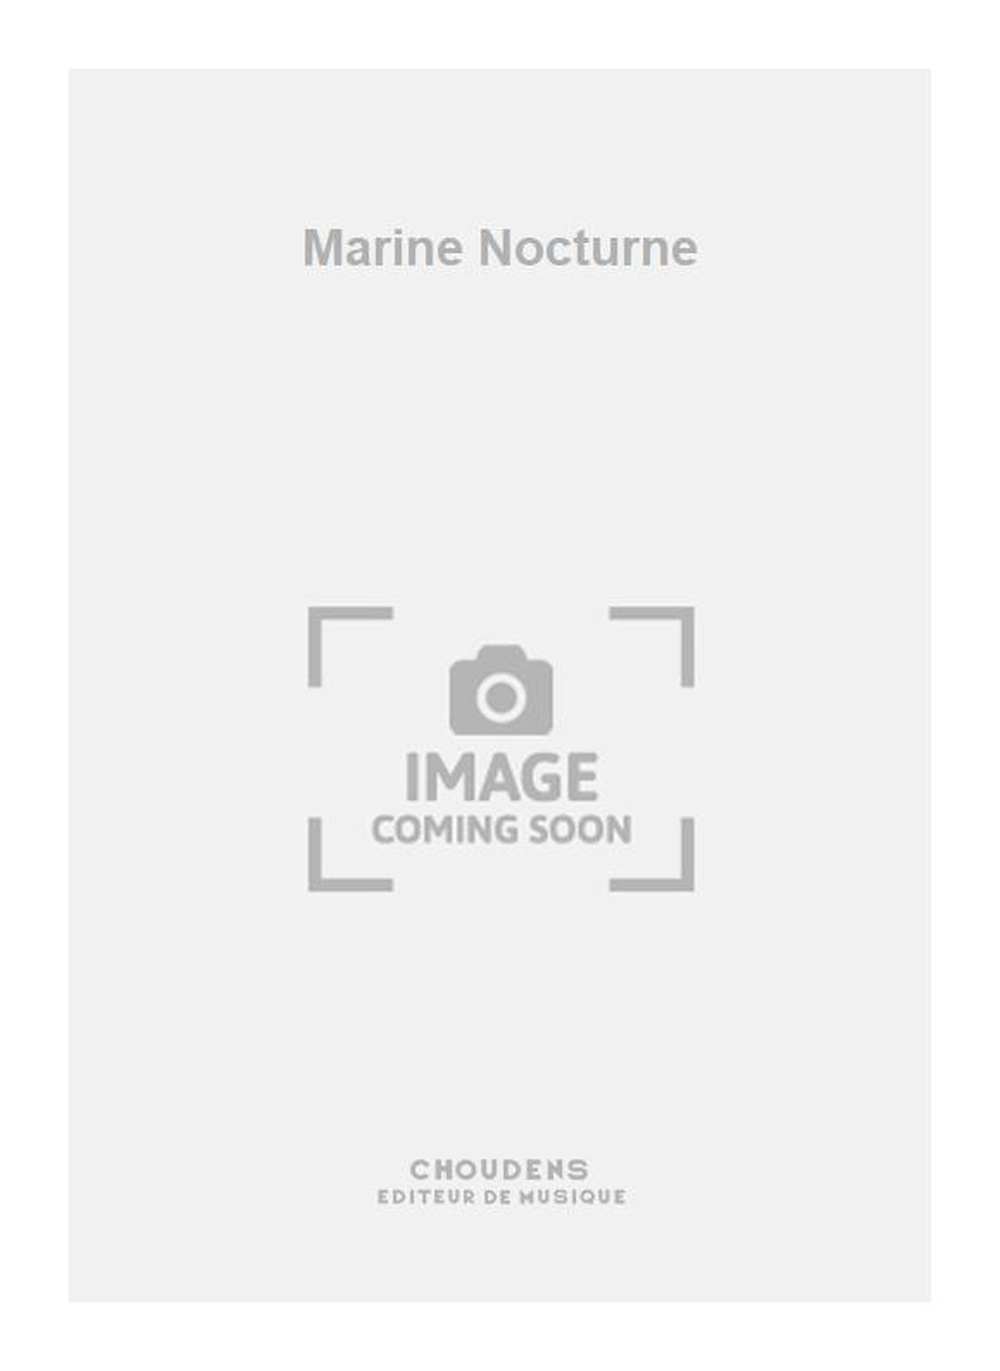 Georges Bizet: Marine Nocturne